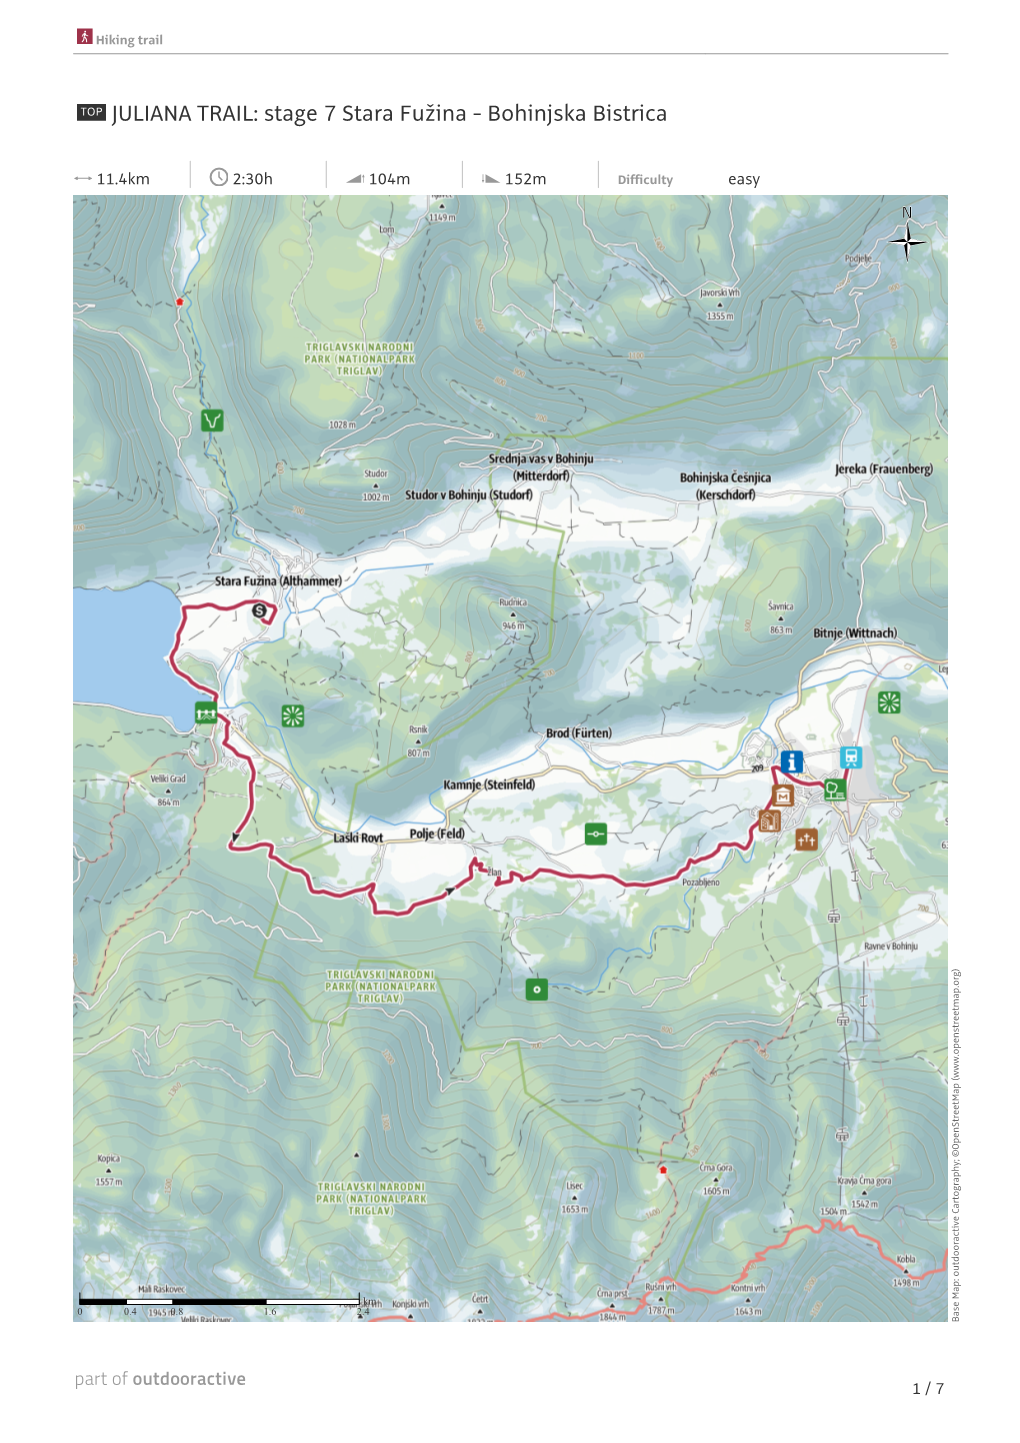 JULIANA TRAIL: Stage 7 Stara Fužina - Bohinjska Bistrica